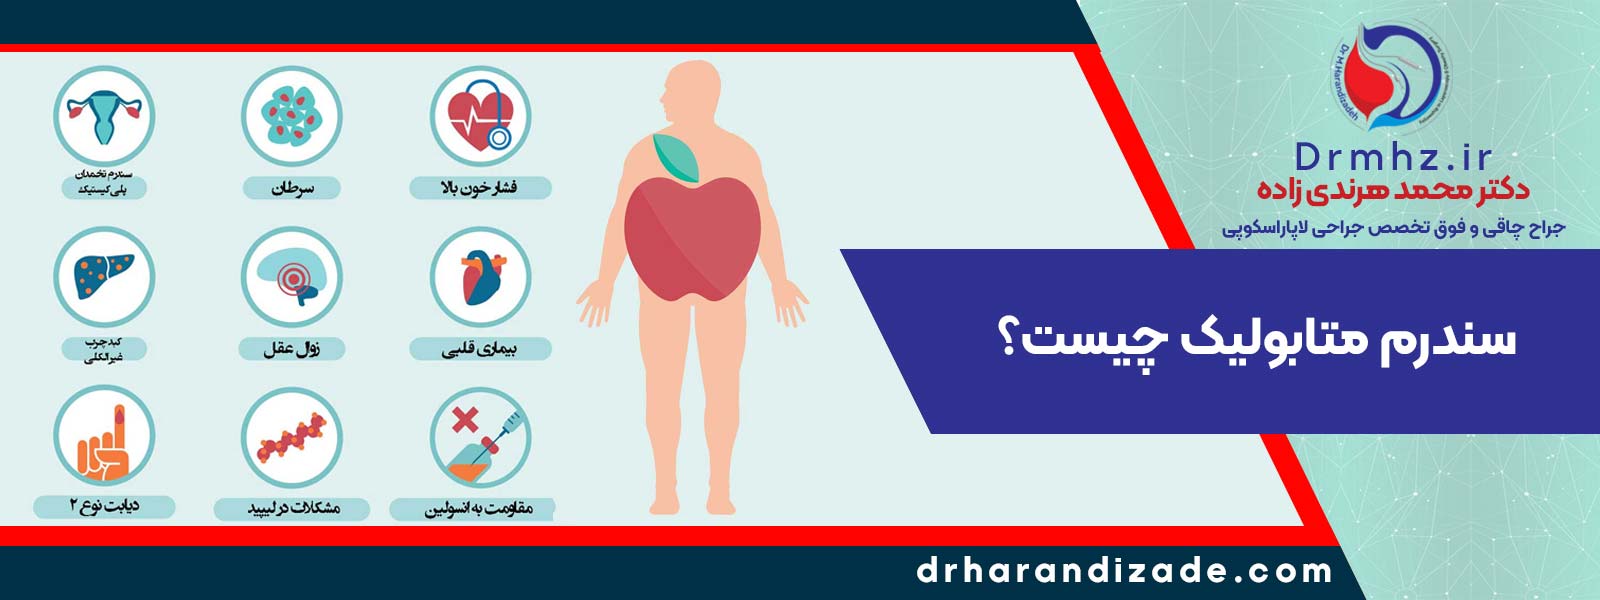 1401 05 metabolic درمان بیماری متابولیک در اصفهان syndrome - 5 خطر بیماری سندرم متابولیک | جراحی چاقی اصفهان